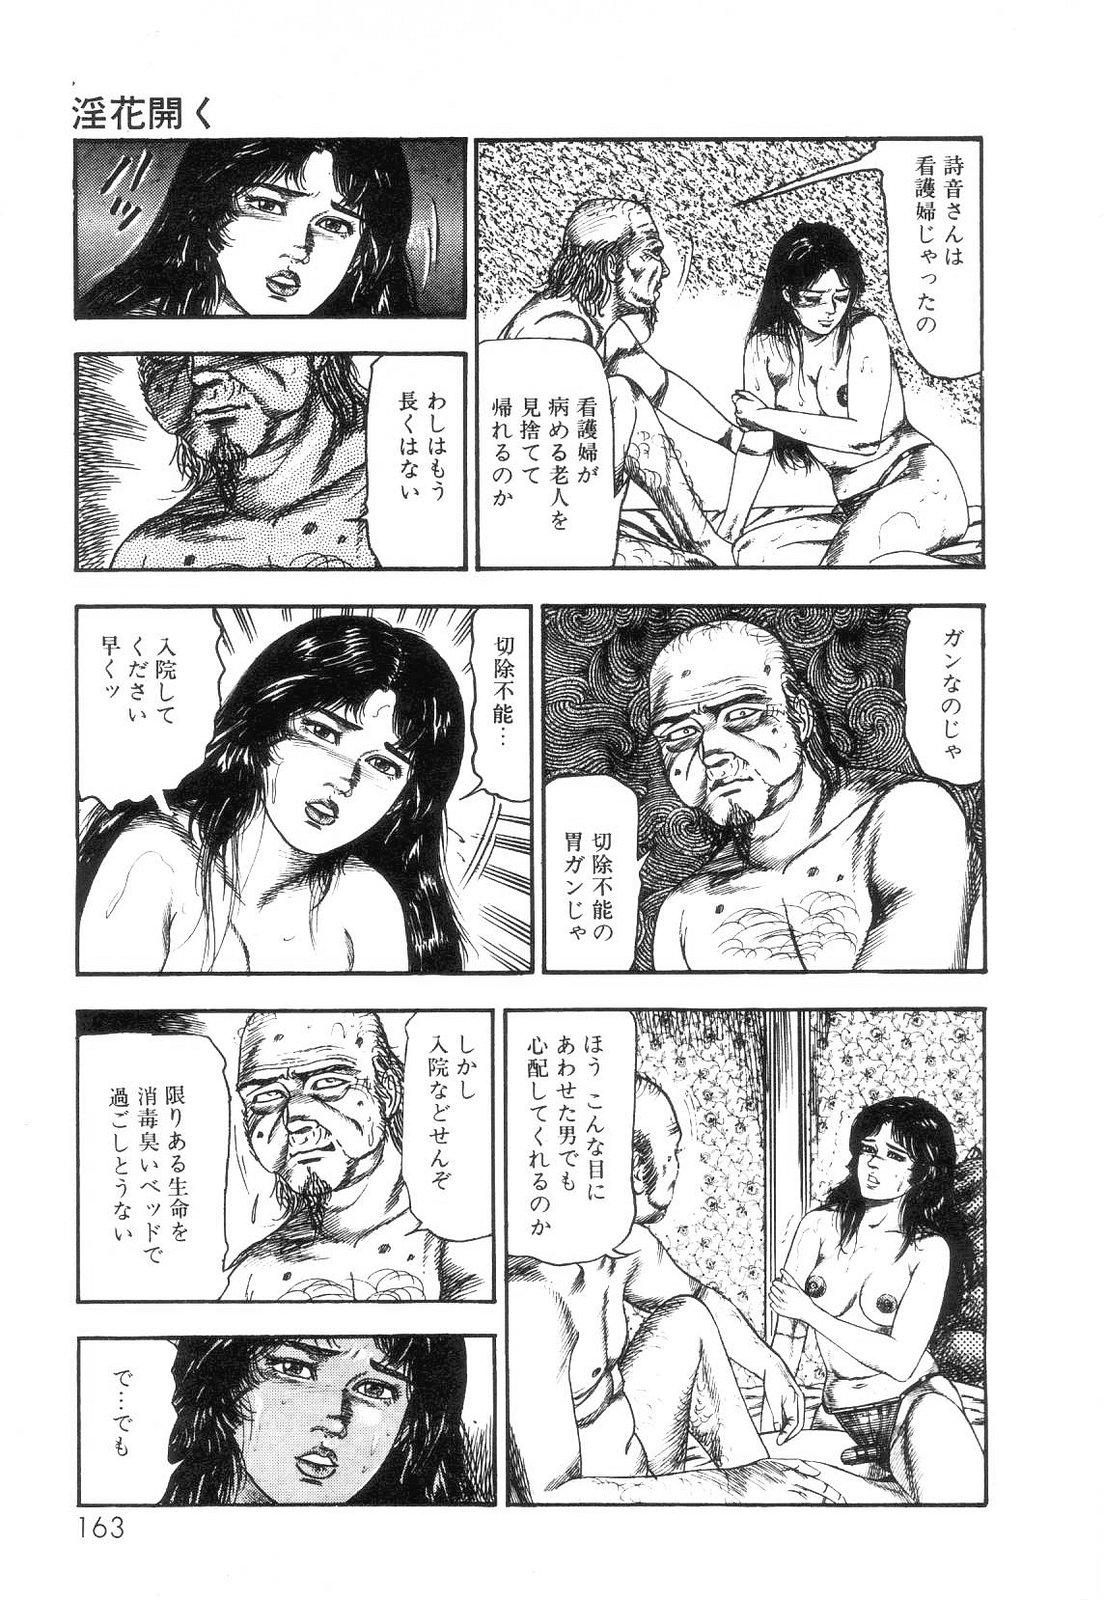 Shiro no Mokushiroku Vol. 2 - Shion Ryoujoku no Shou 164